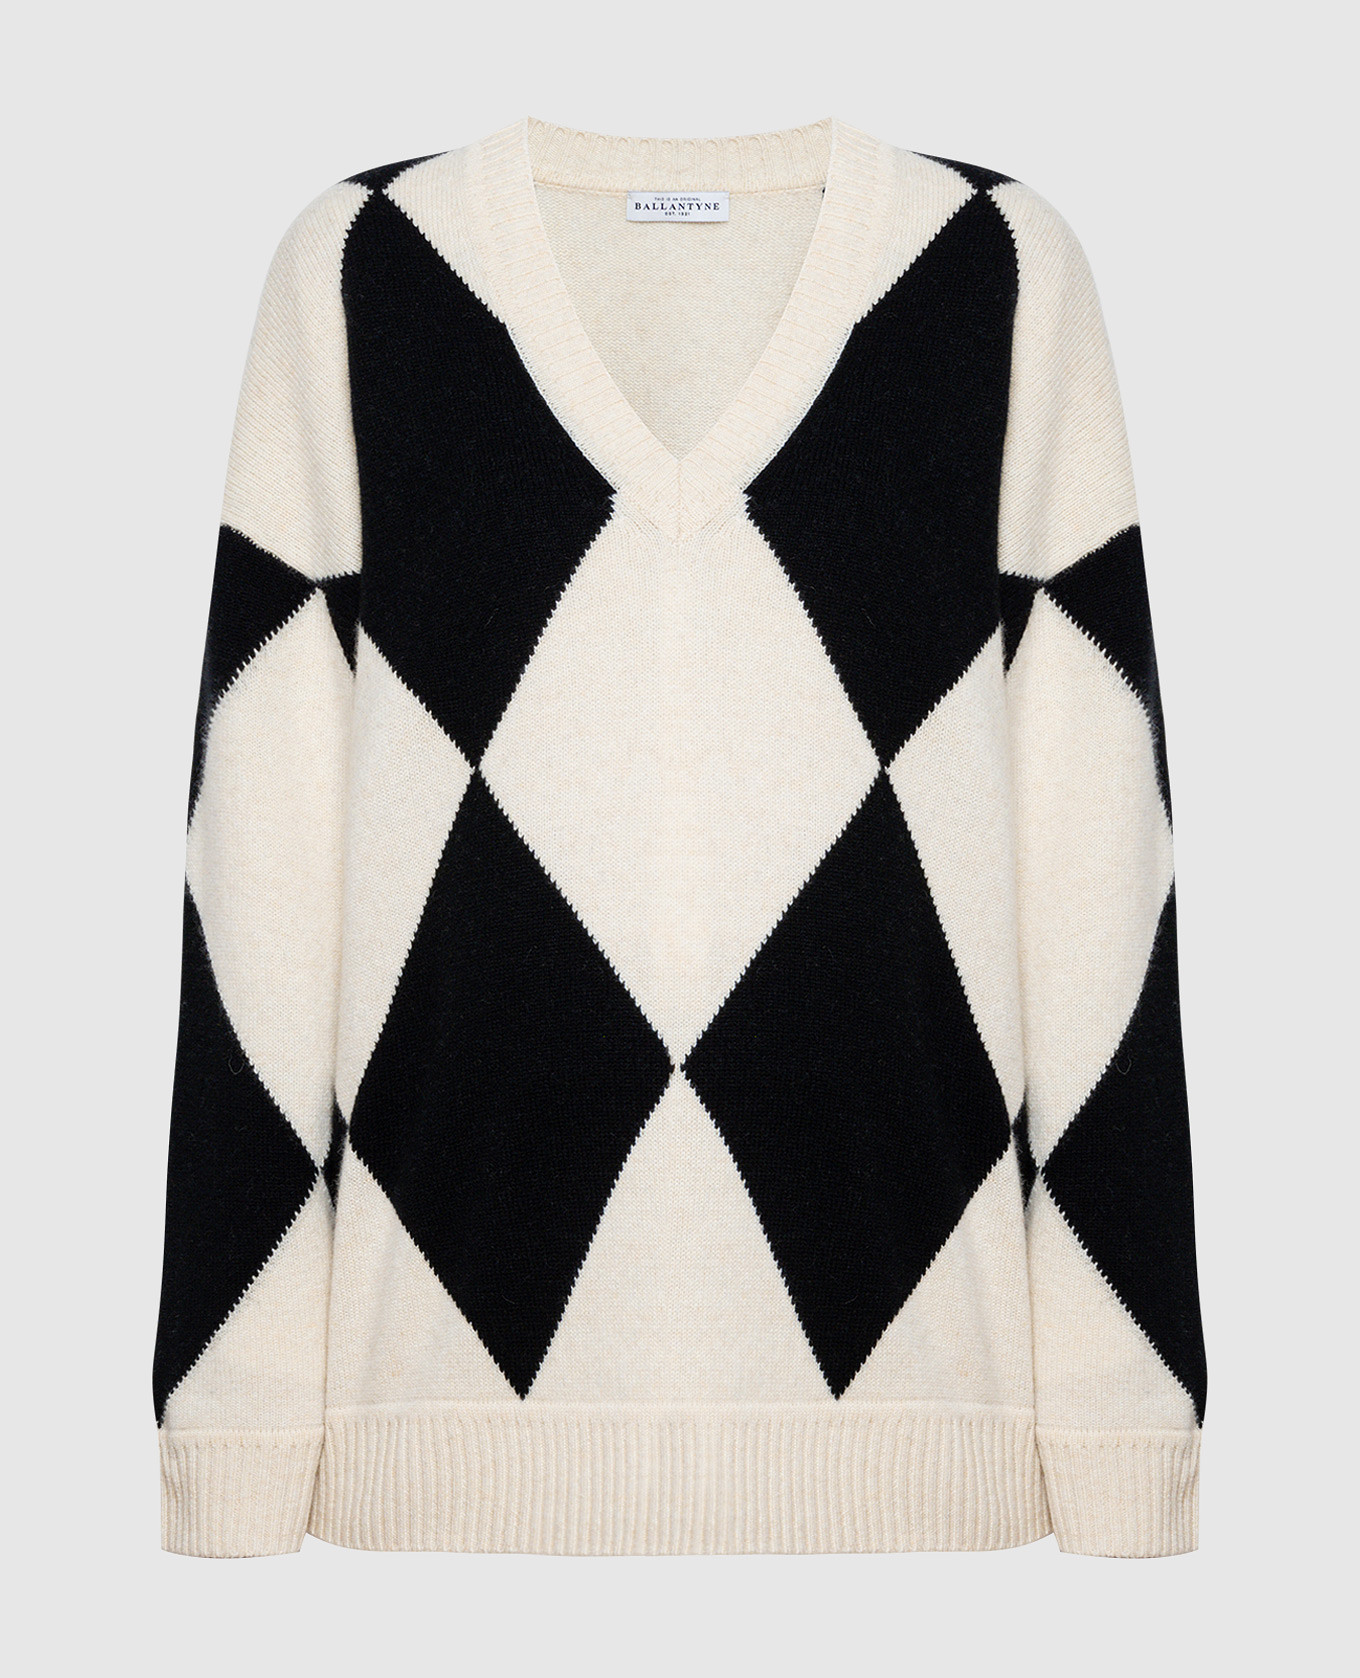 Белый пуловер из шерсти с геометрическим узором.